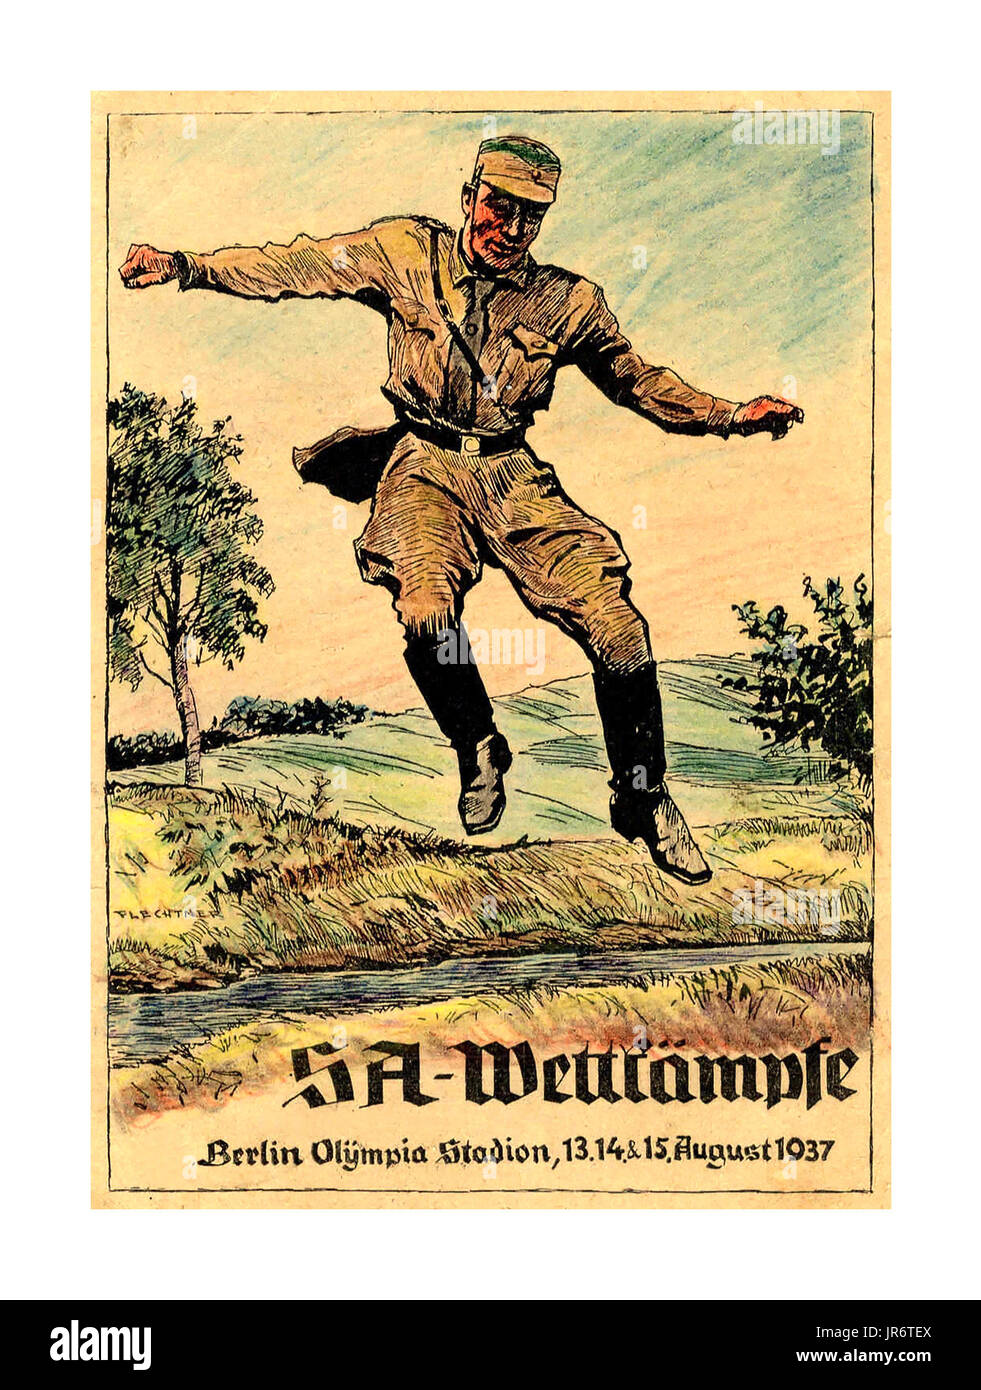 Vintage WW2 cartolina di Propaganda per i Giochi Olimpici di agosto 1937 SA Wettkämpfe, Berlino, Olympia Stadion, 13.14.&15. Agosto 1937 Germania Foto Stock